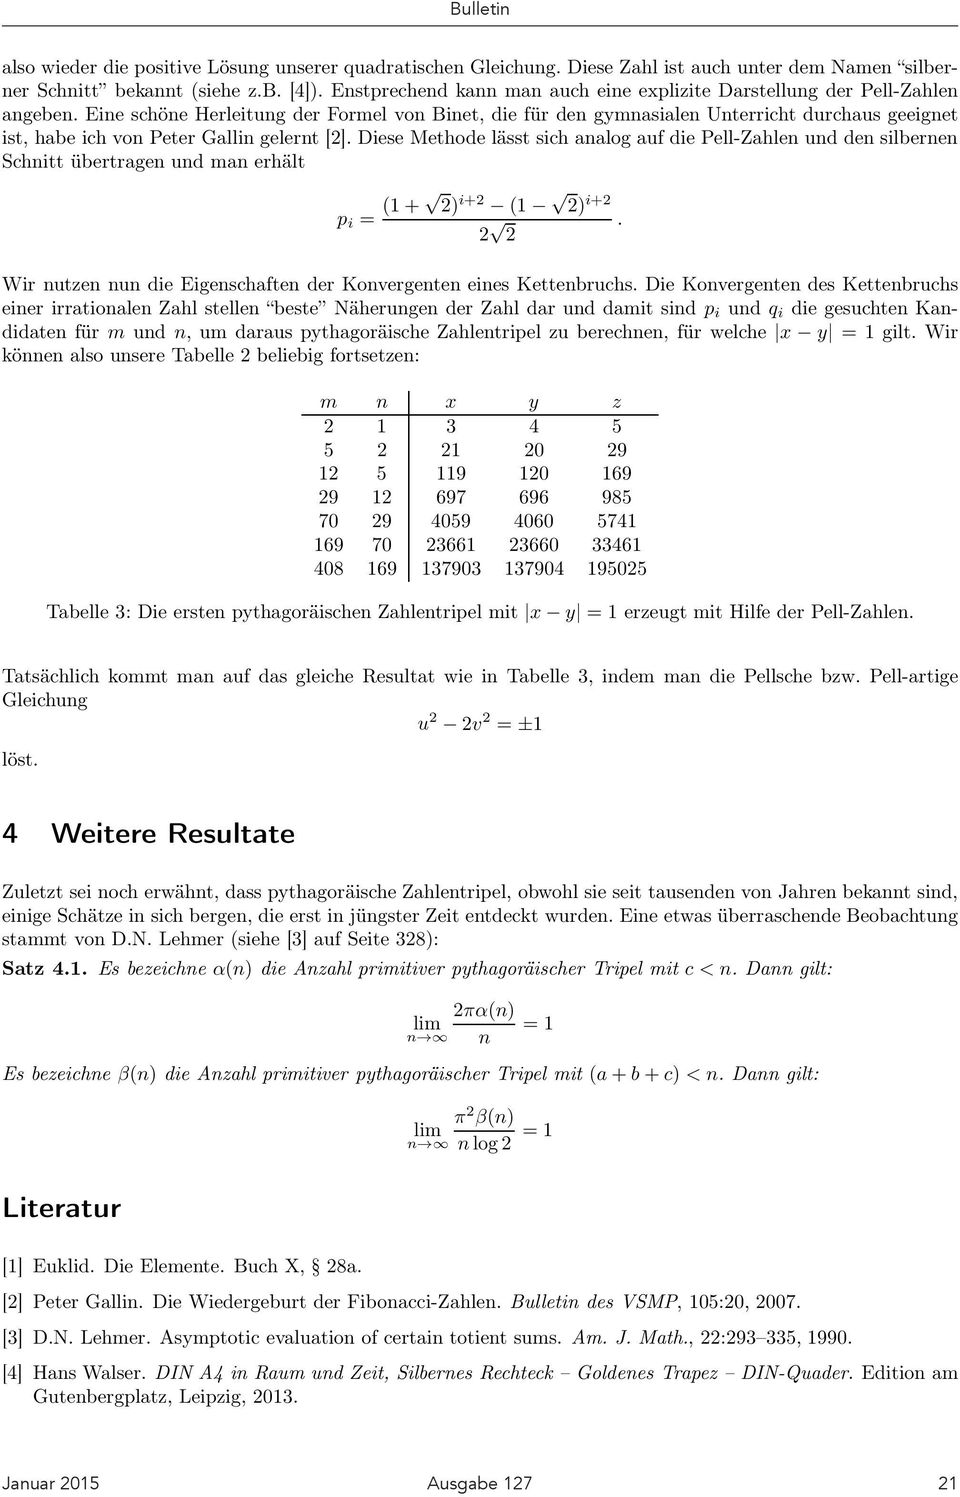 Eine schöne Herleitung der Formel von Binet, die für dengmnasialenunterrichtdurchausgeeignet ist, habe ich von Peter Gallin gelernt [2].